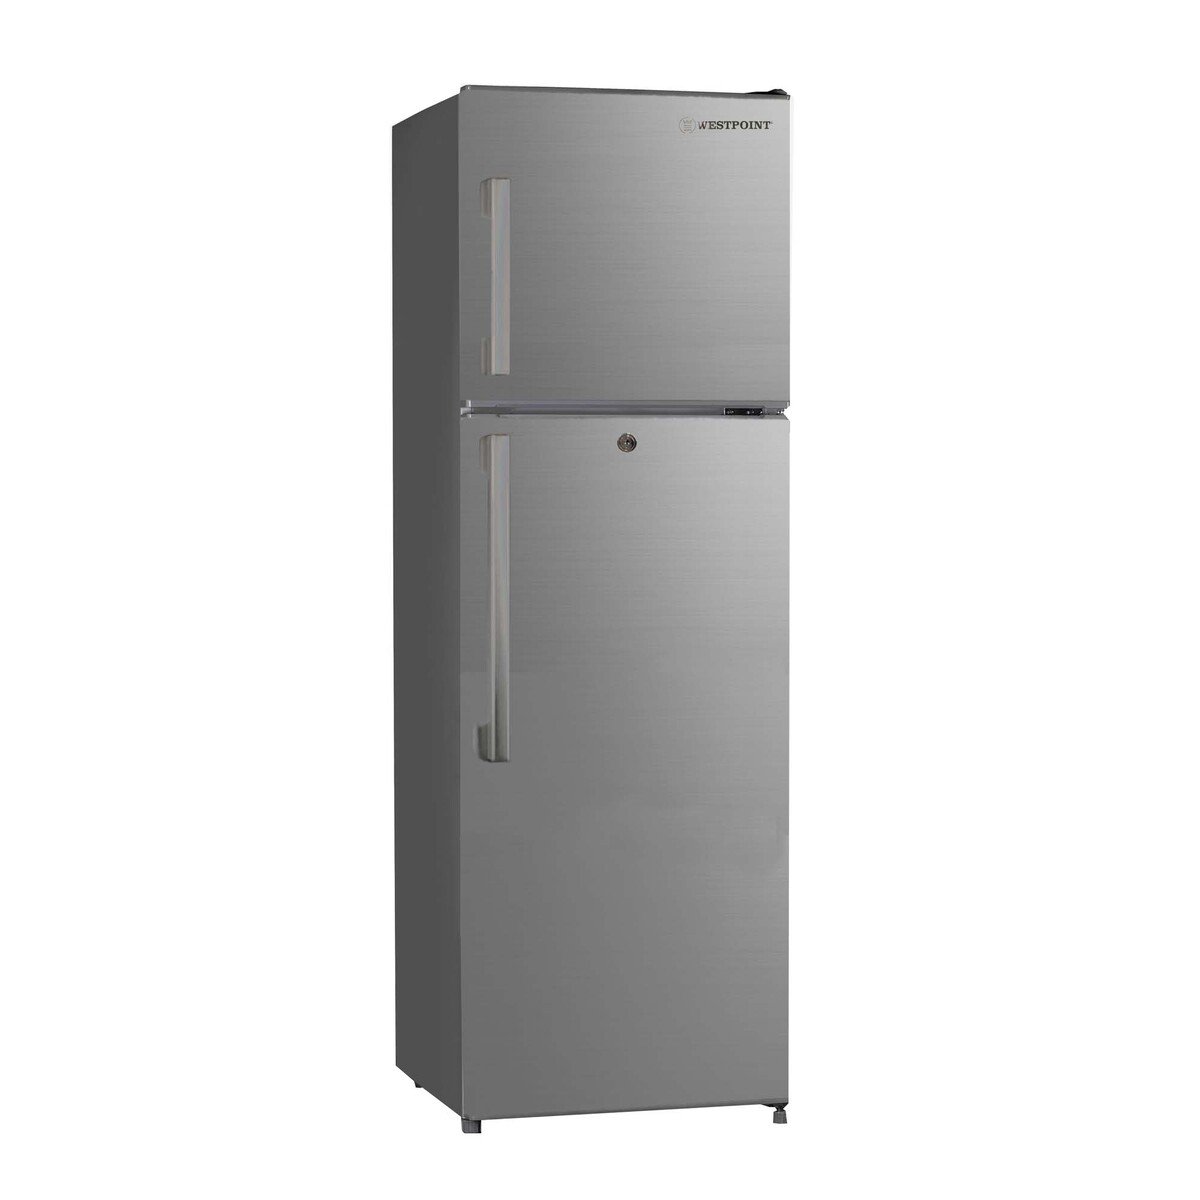 Westpoint Double Door Refrigerator WNN-3518ERI 254LTR